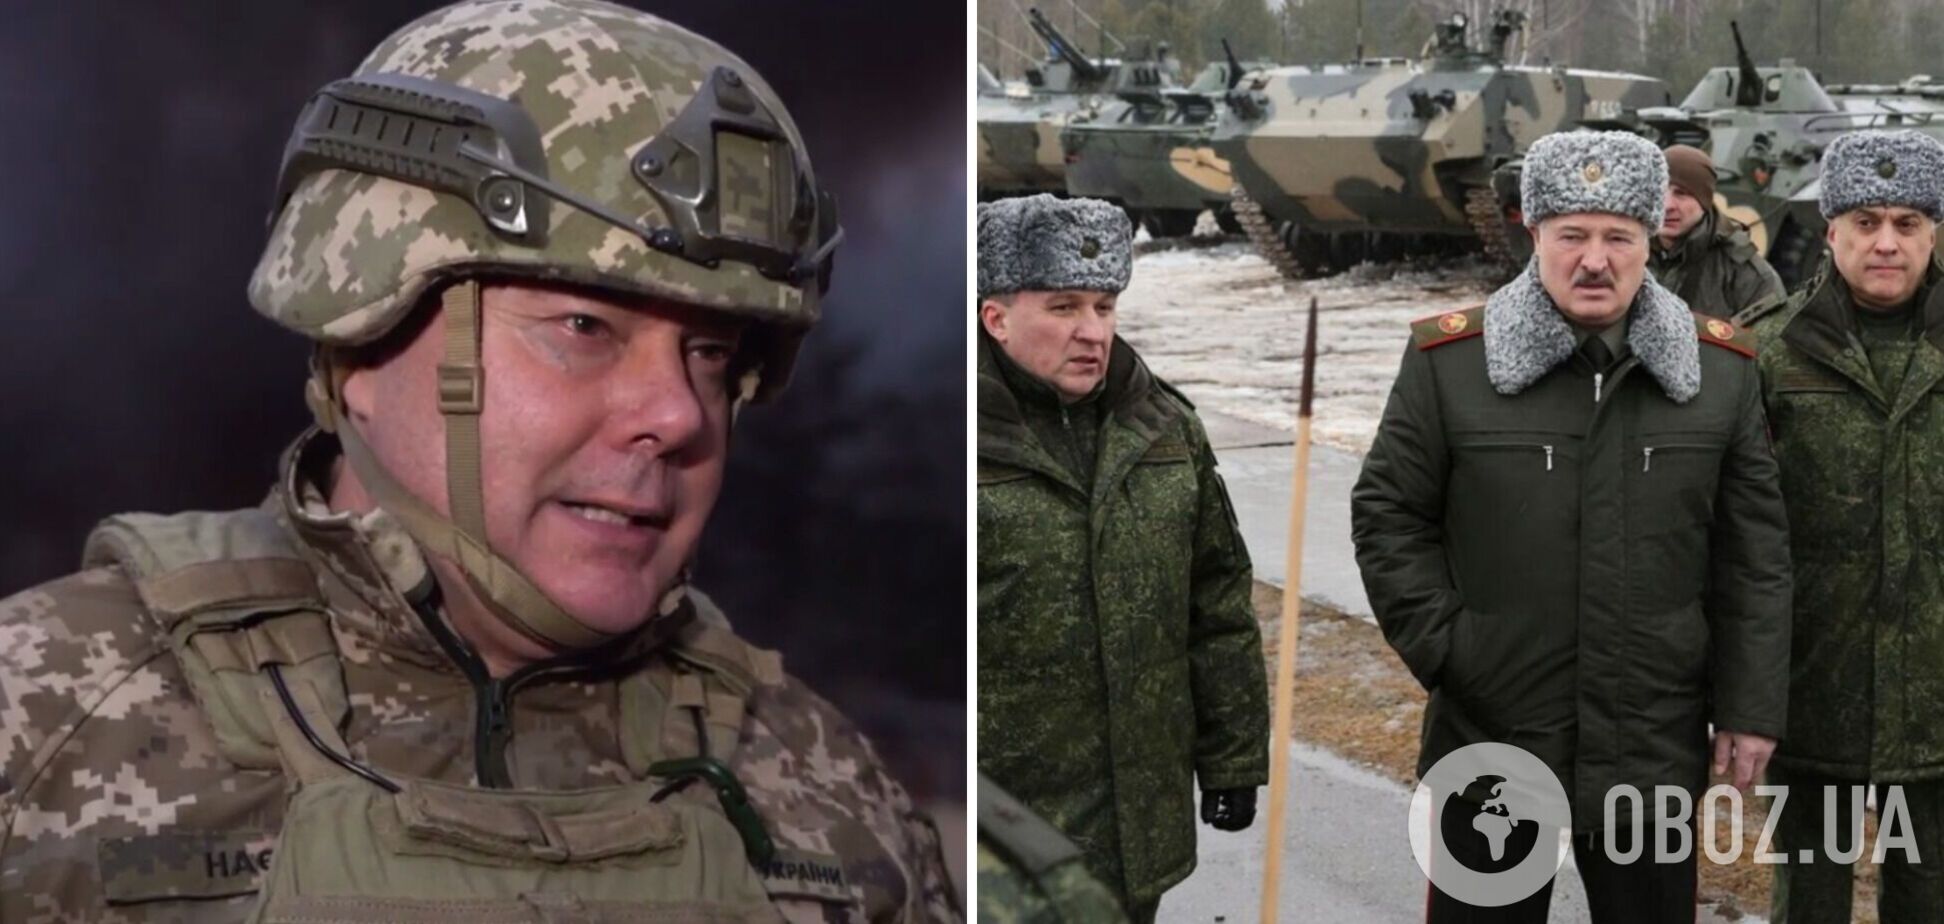 Наев: угроза с севера низкая, но полигоны Беларуси готовы принимать дополнительные силы